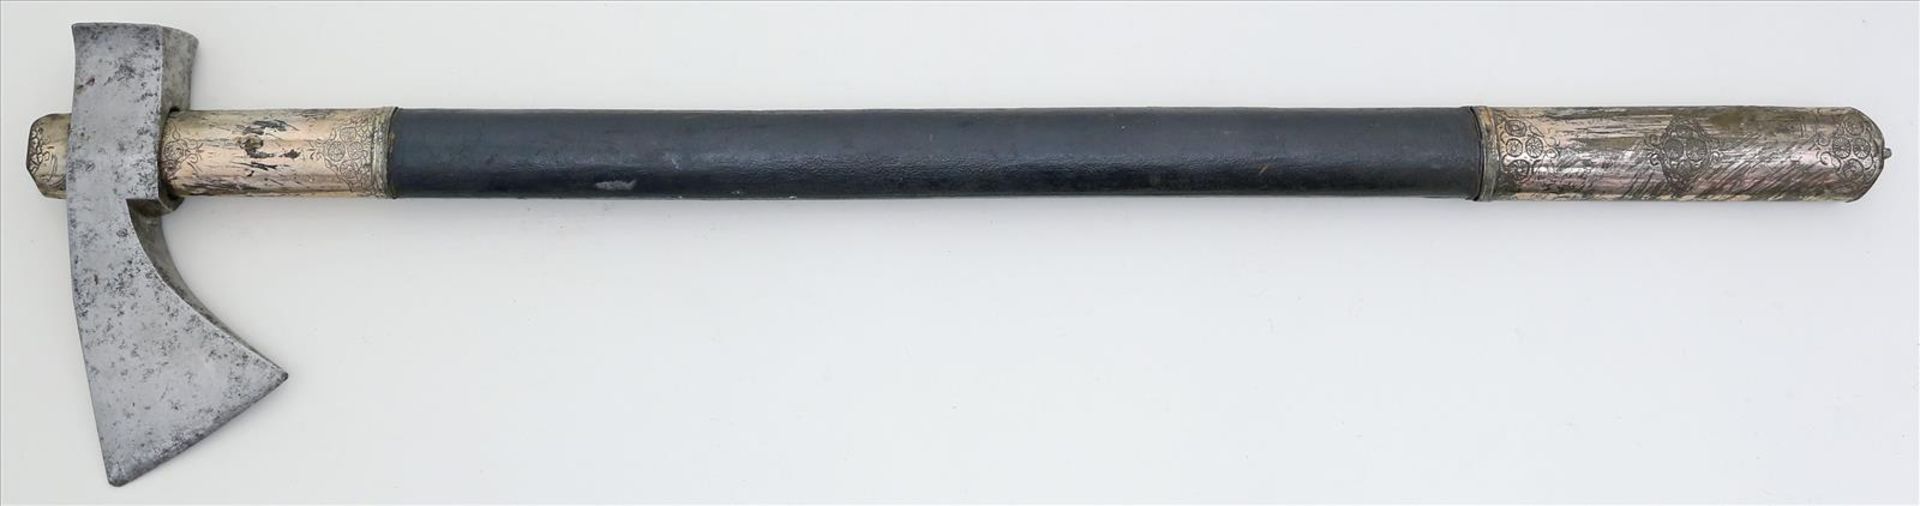 Axt.Eisen, erg. Holzgriff mit graviertem, chinesischem Zierbeschlag (teils besch.). L. 70 cm.